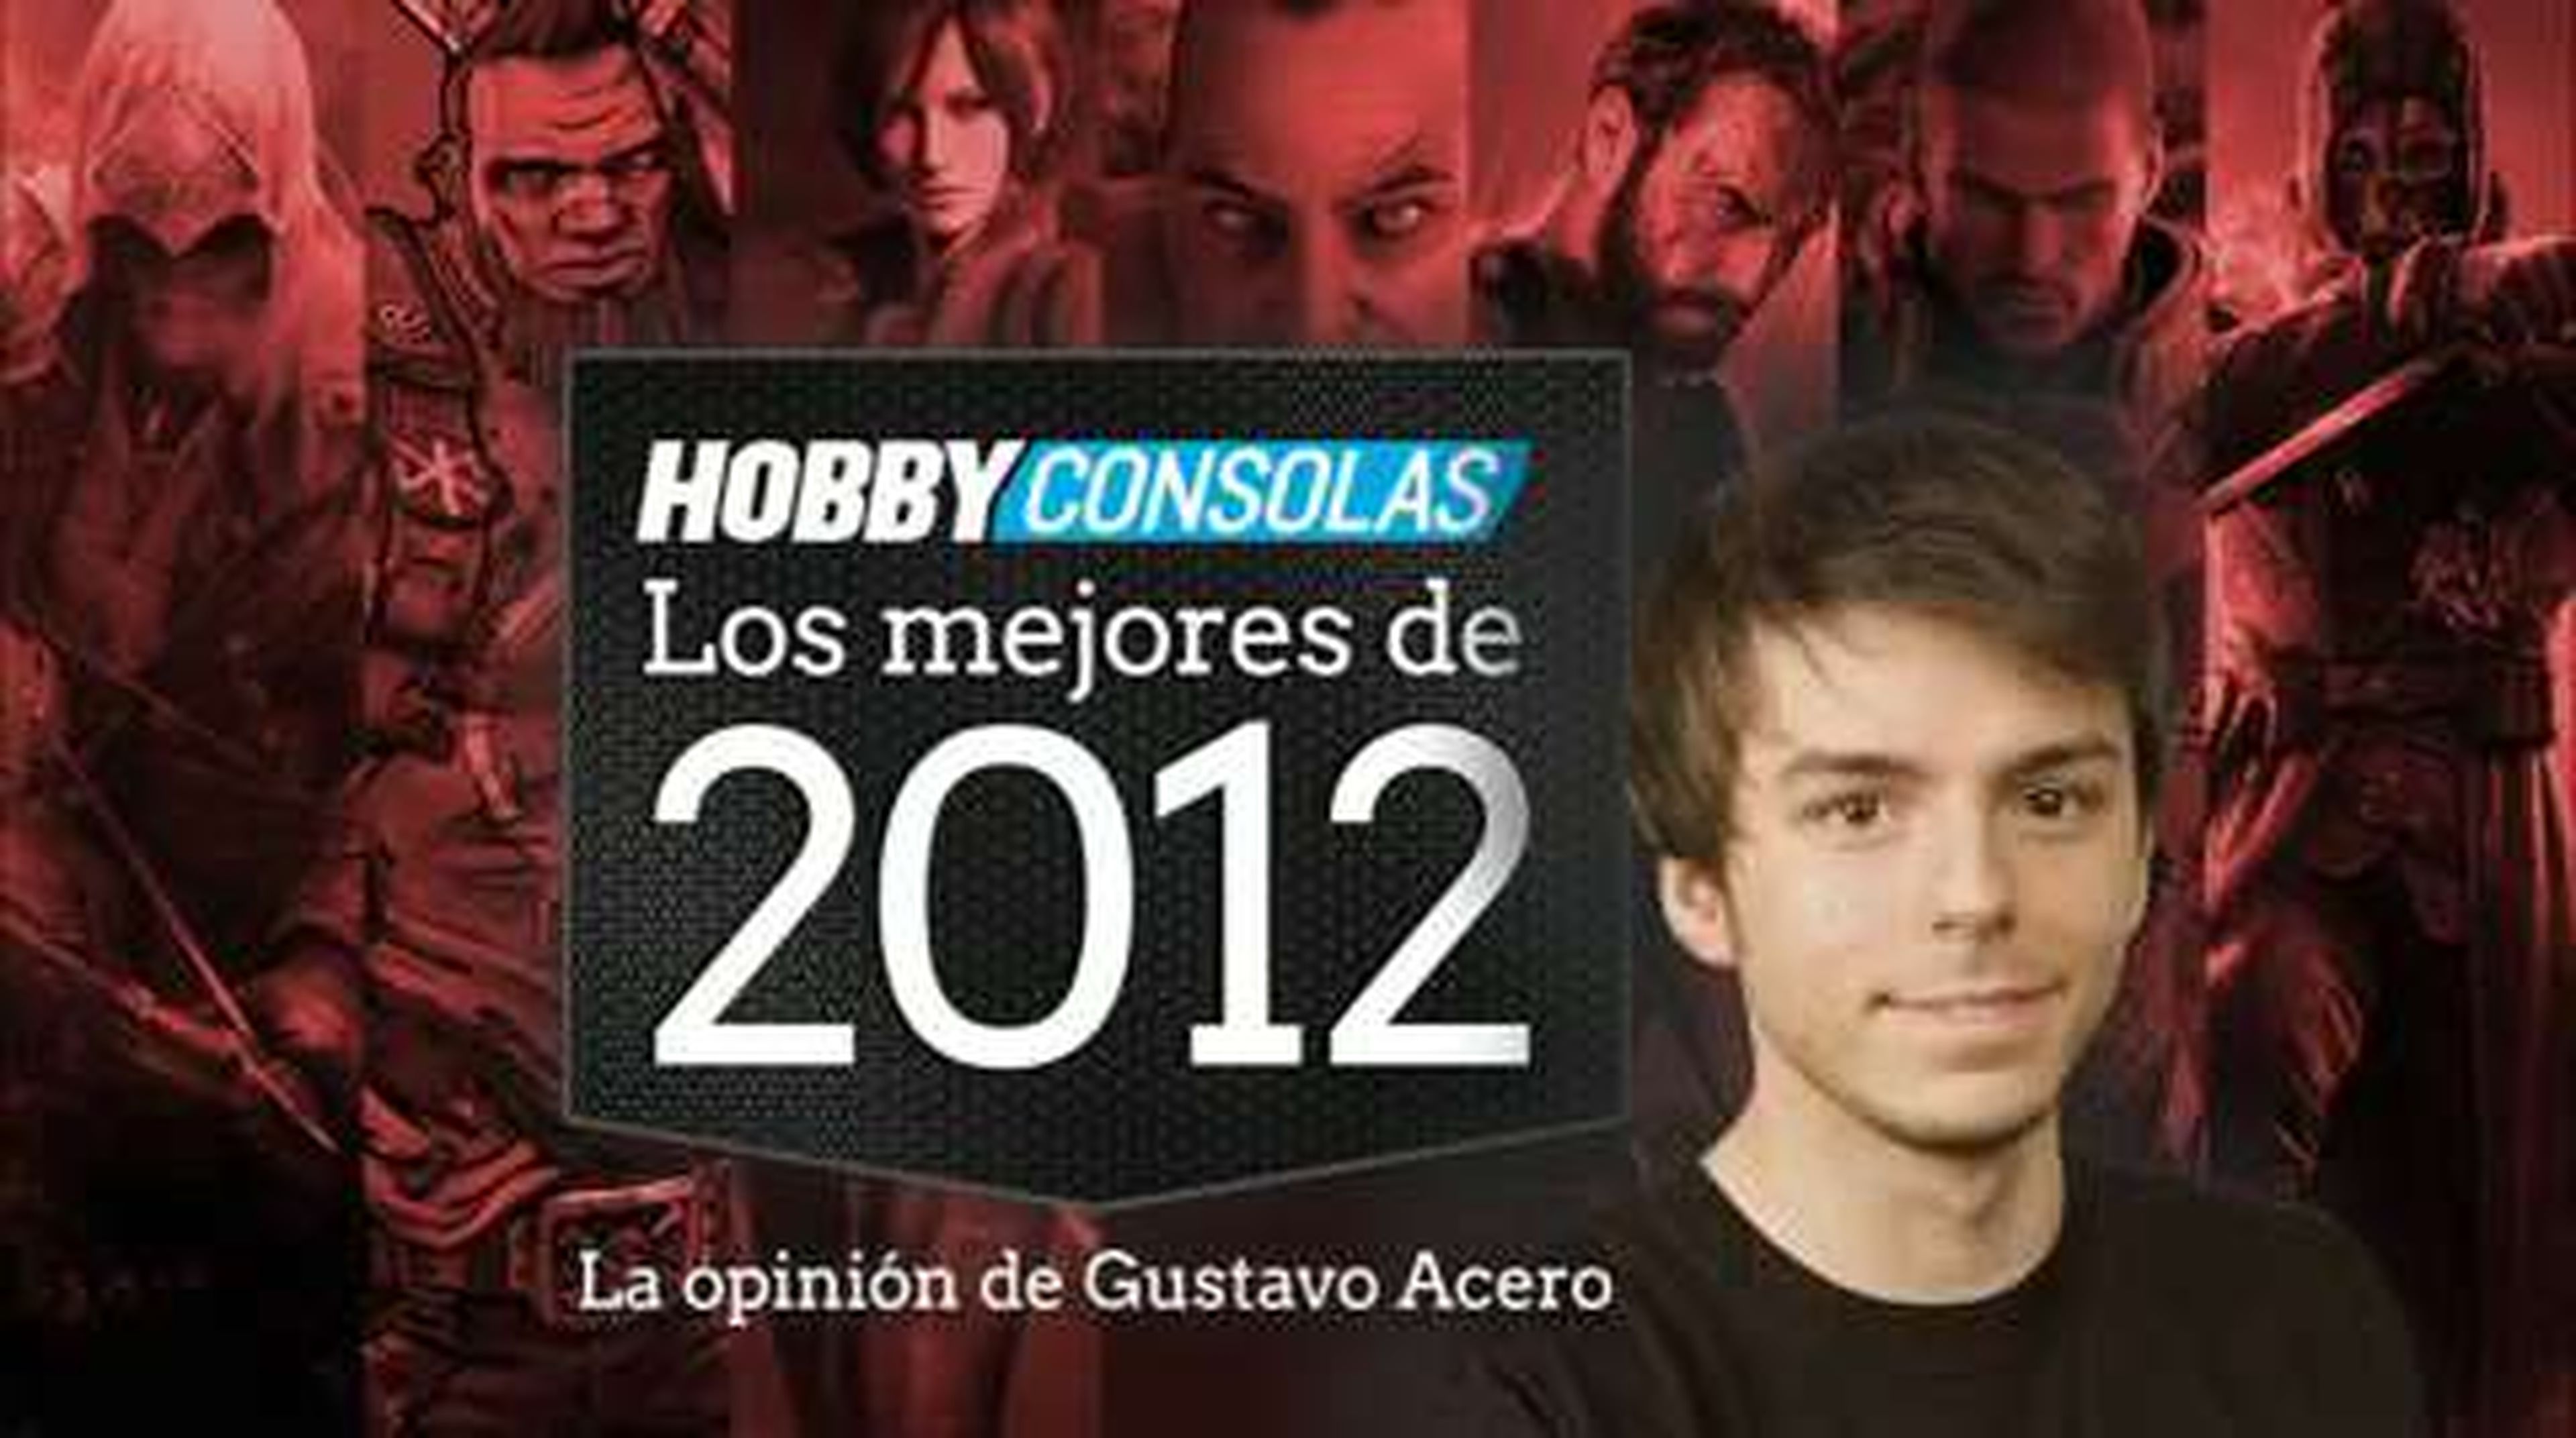 Lo mejor de 2012 (HD) Gustavo Acero en HobbyConsolas.com